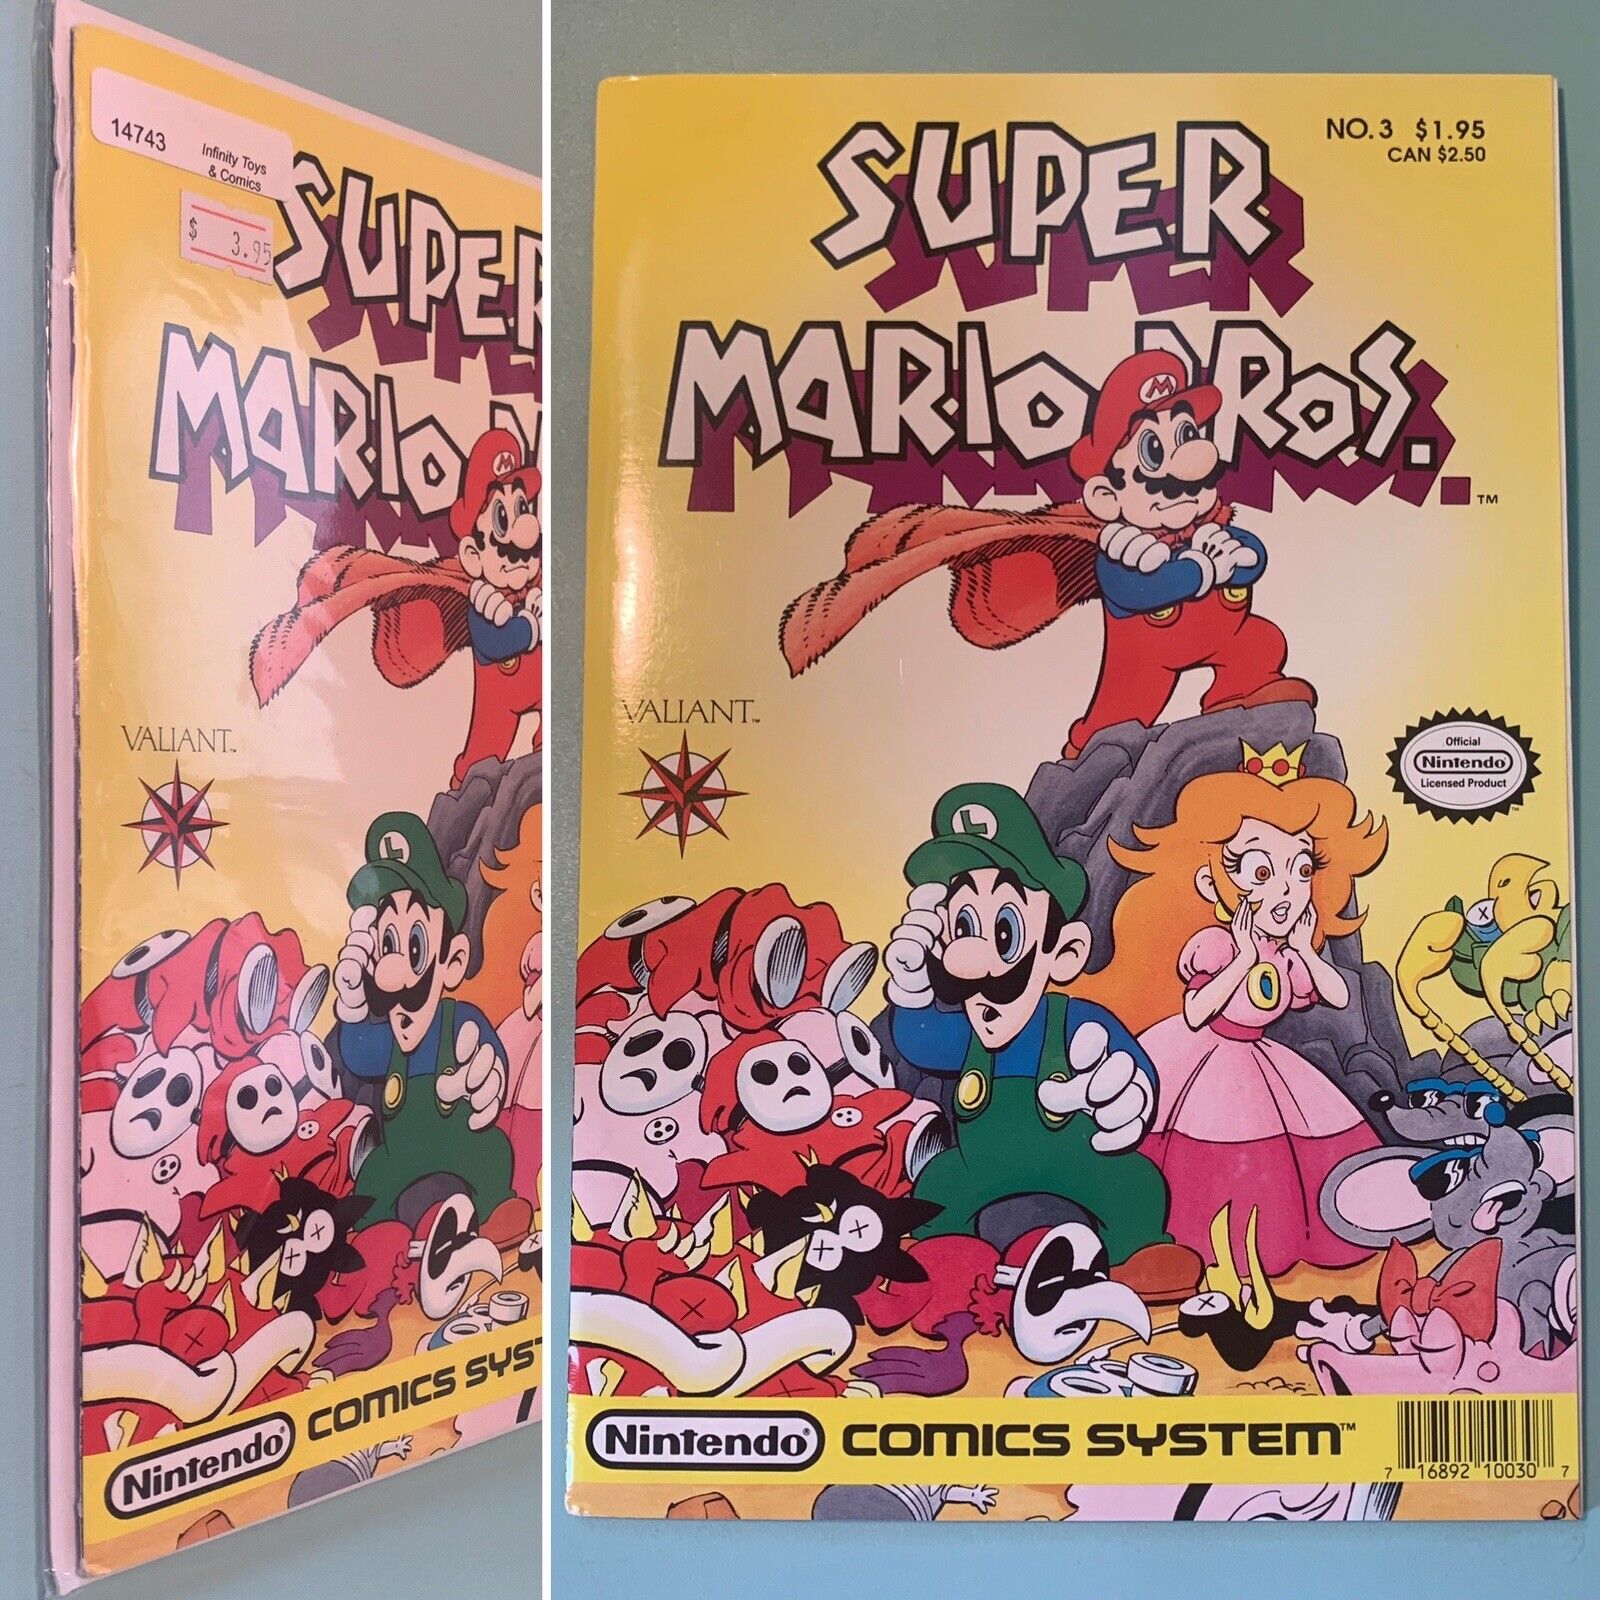 [NICE] 1990 Valiant SUPER MARIO BROS NINTENDO COMICS SYSTEM VOL. 1 NO. 3 Vintage